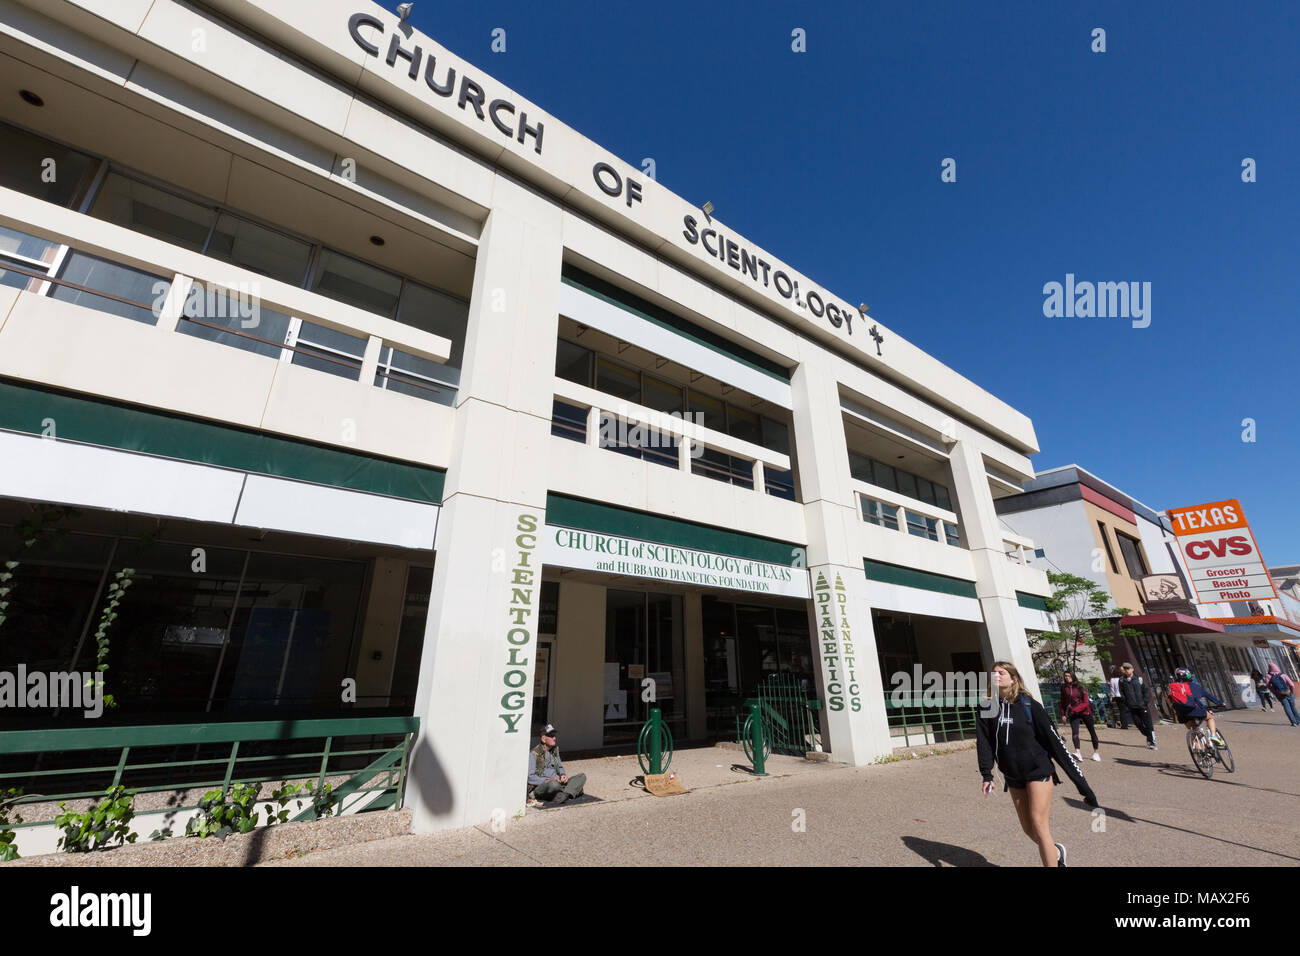 Eglise de scientologie, Austin, Texas USA Banque D'Images